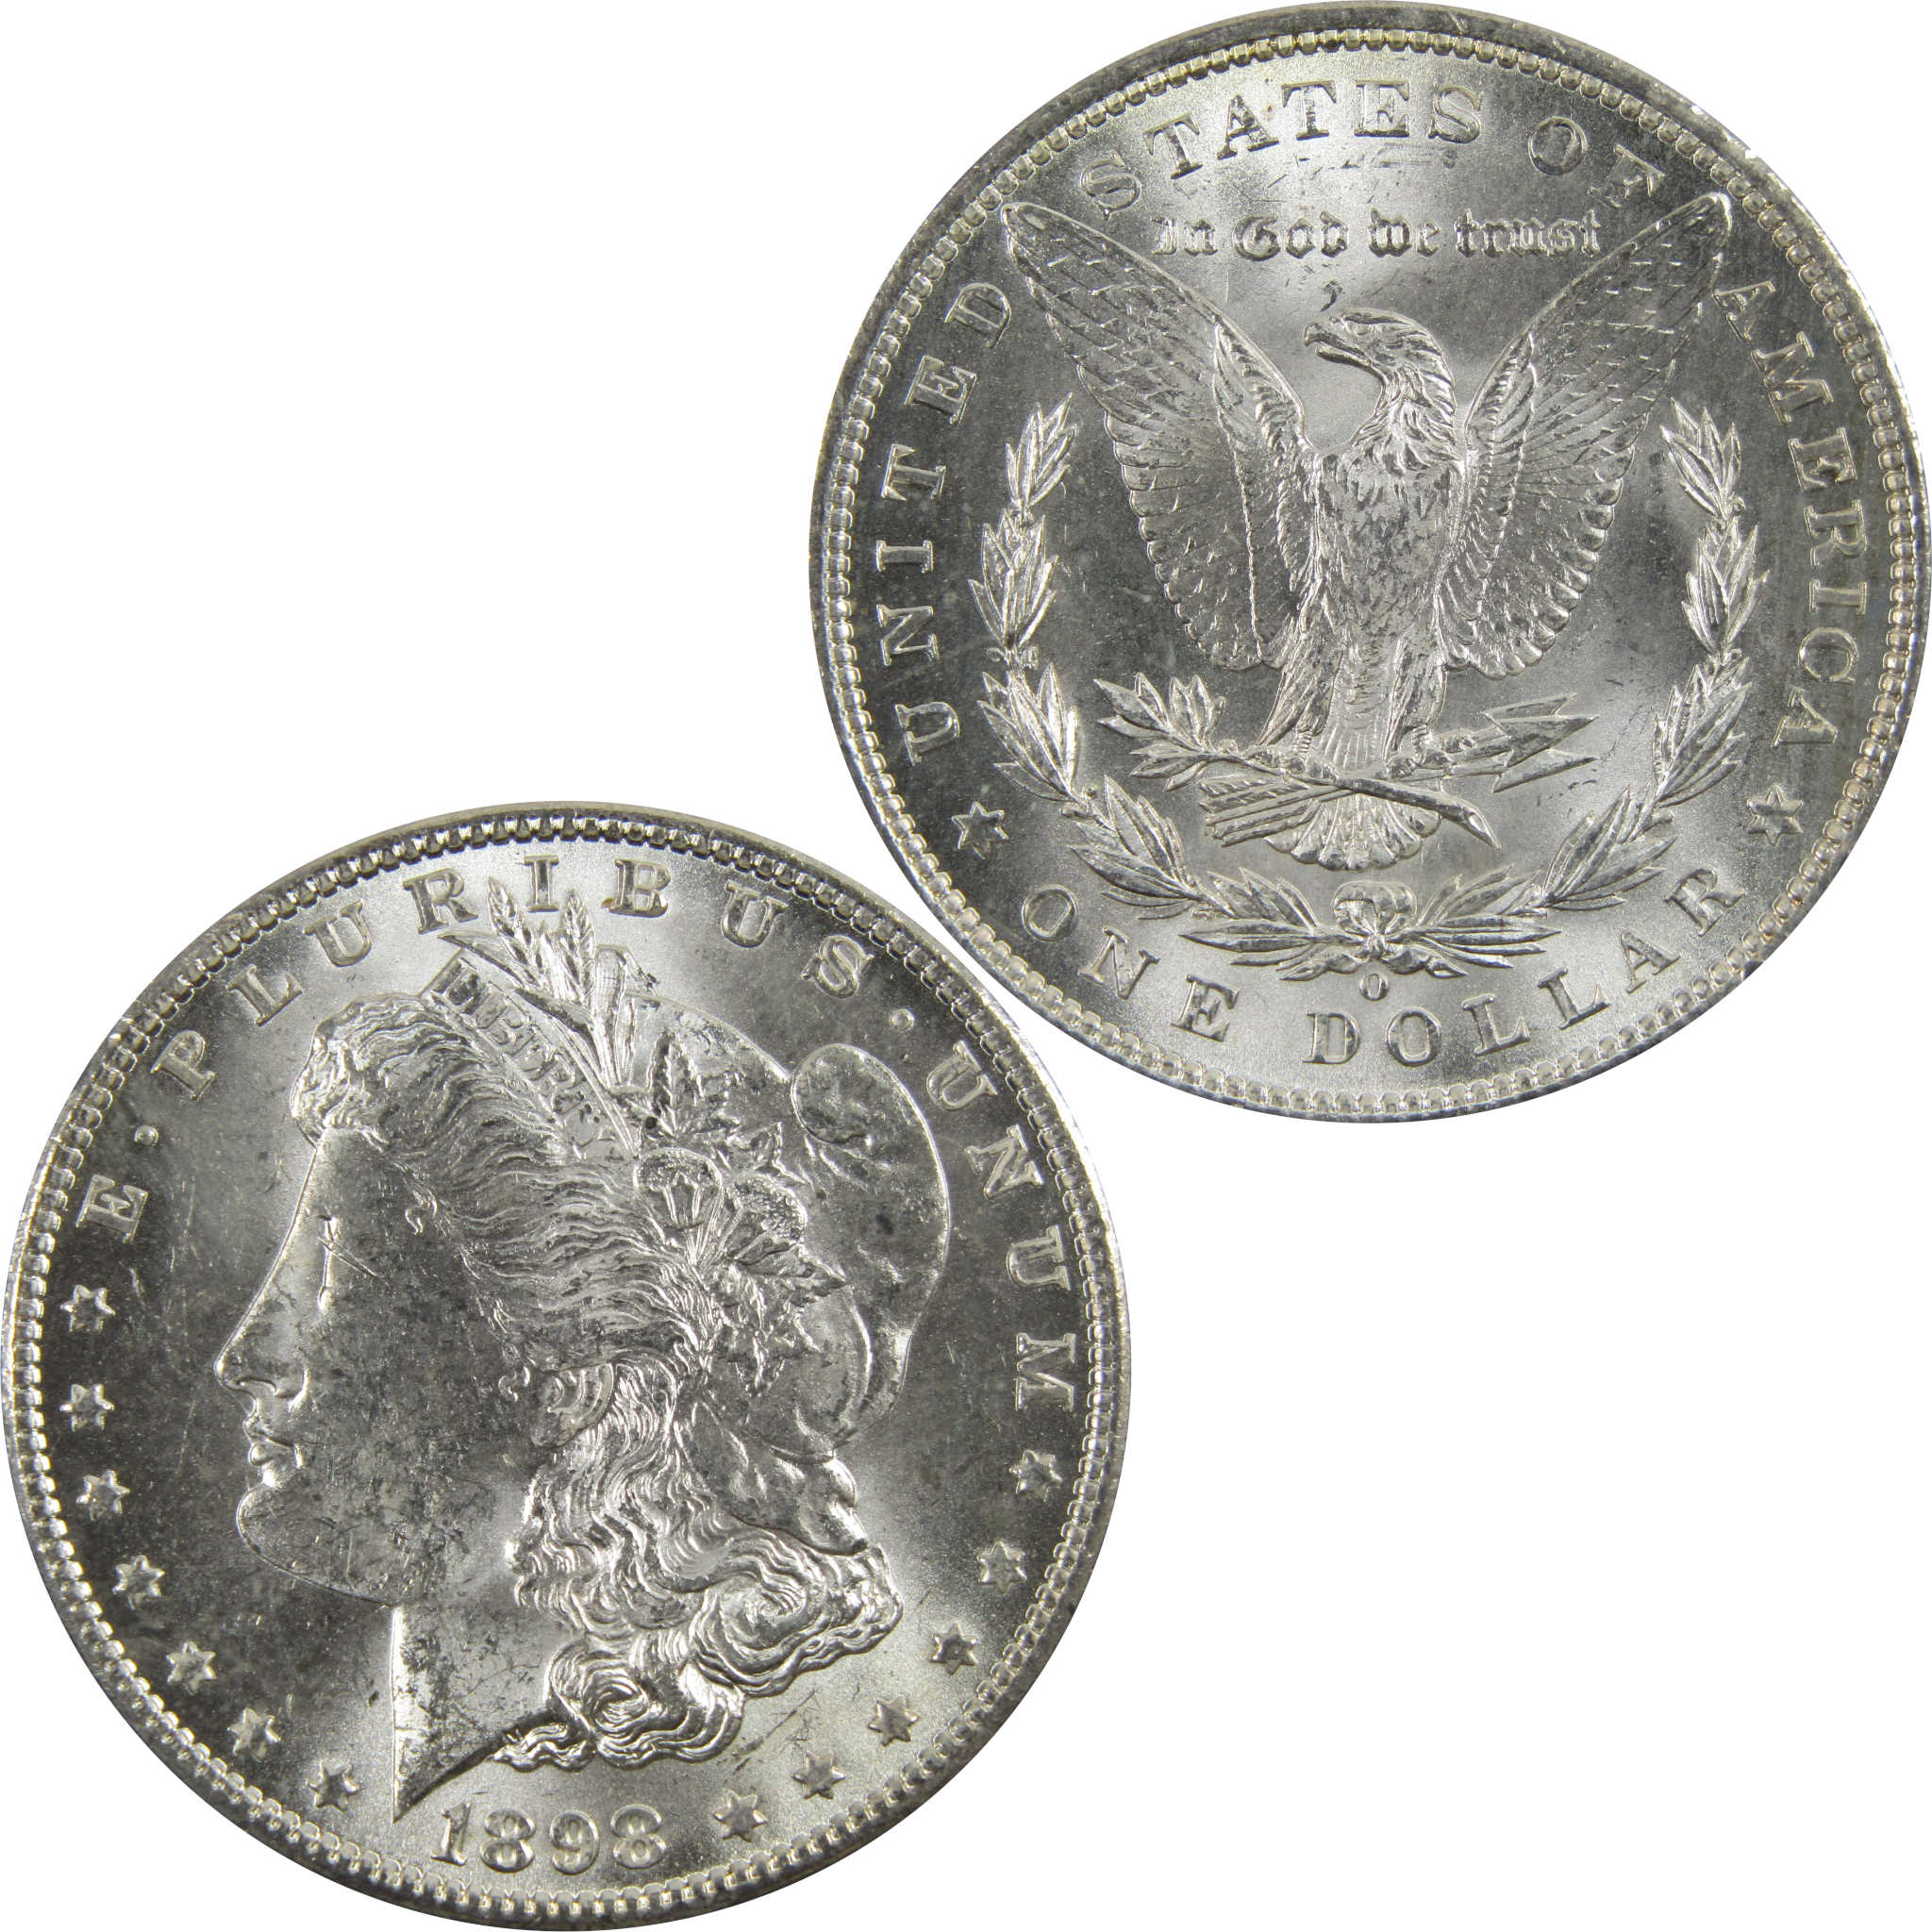 1898 O Morgan Dollar BU Uncirculated 90% Silver $1 Coin SKU:I5250 - Morgan coin - Morgan silver dollar - Morgan silver dollar for sale - Profile Coins &amp; Collectibles